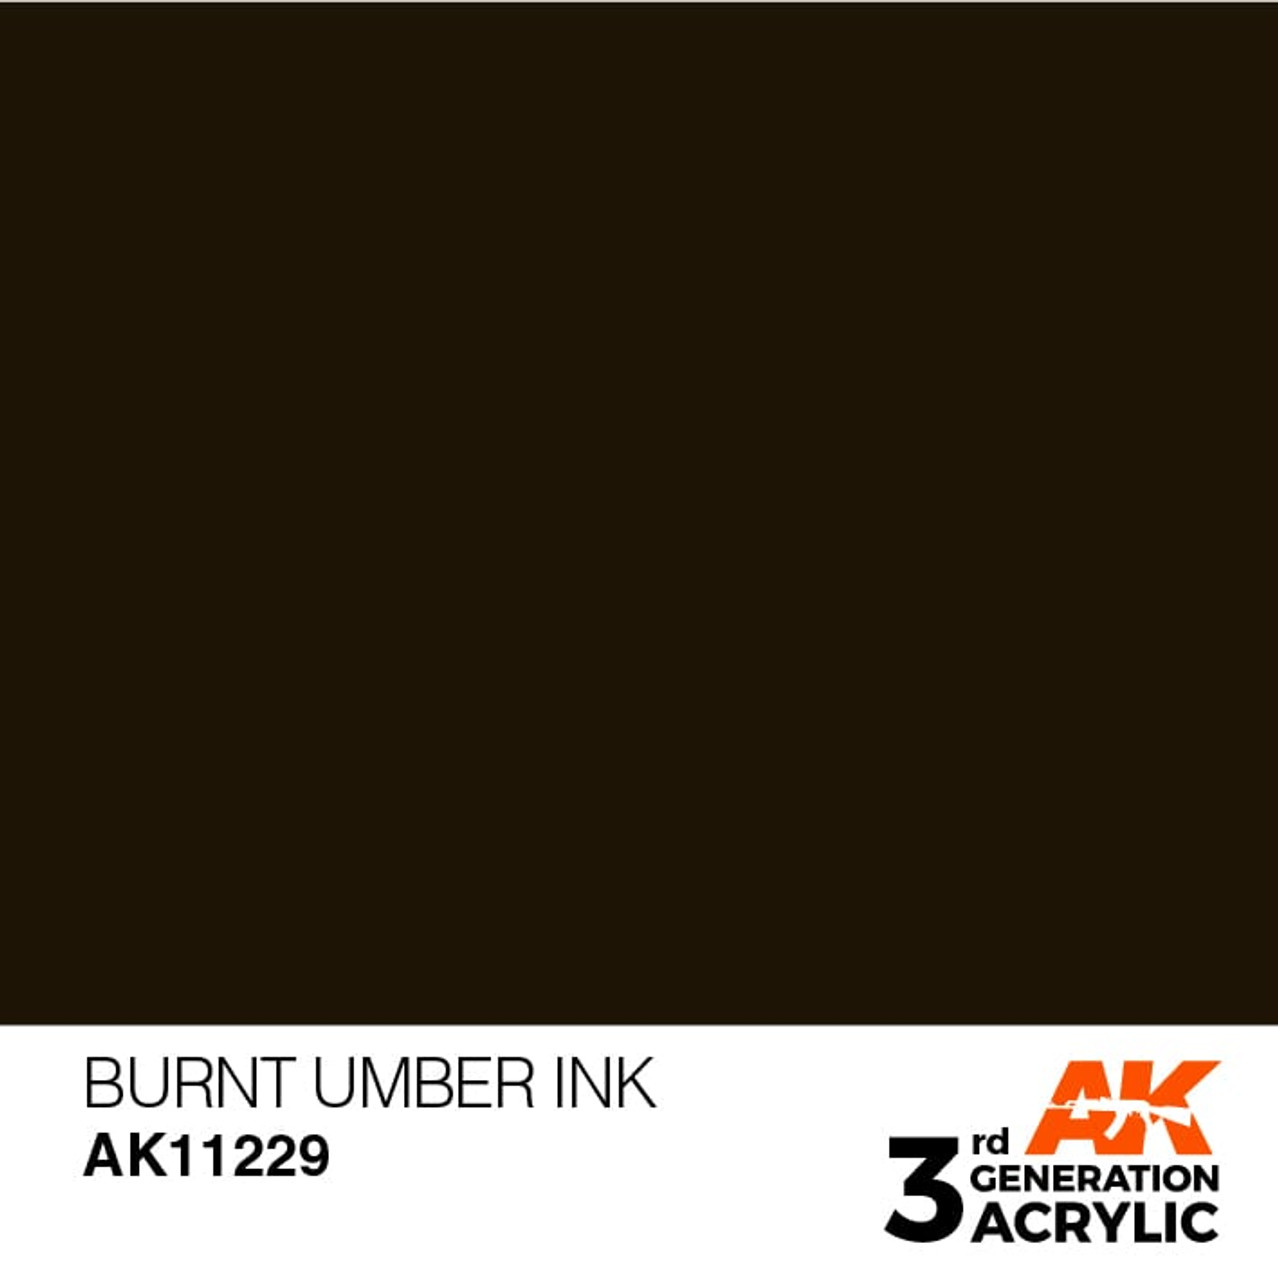 3G 229 -  Burnt Umber Ink - AK11229